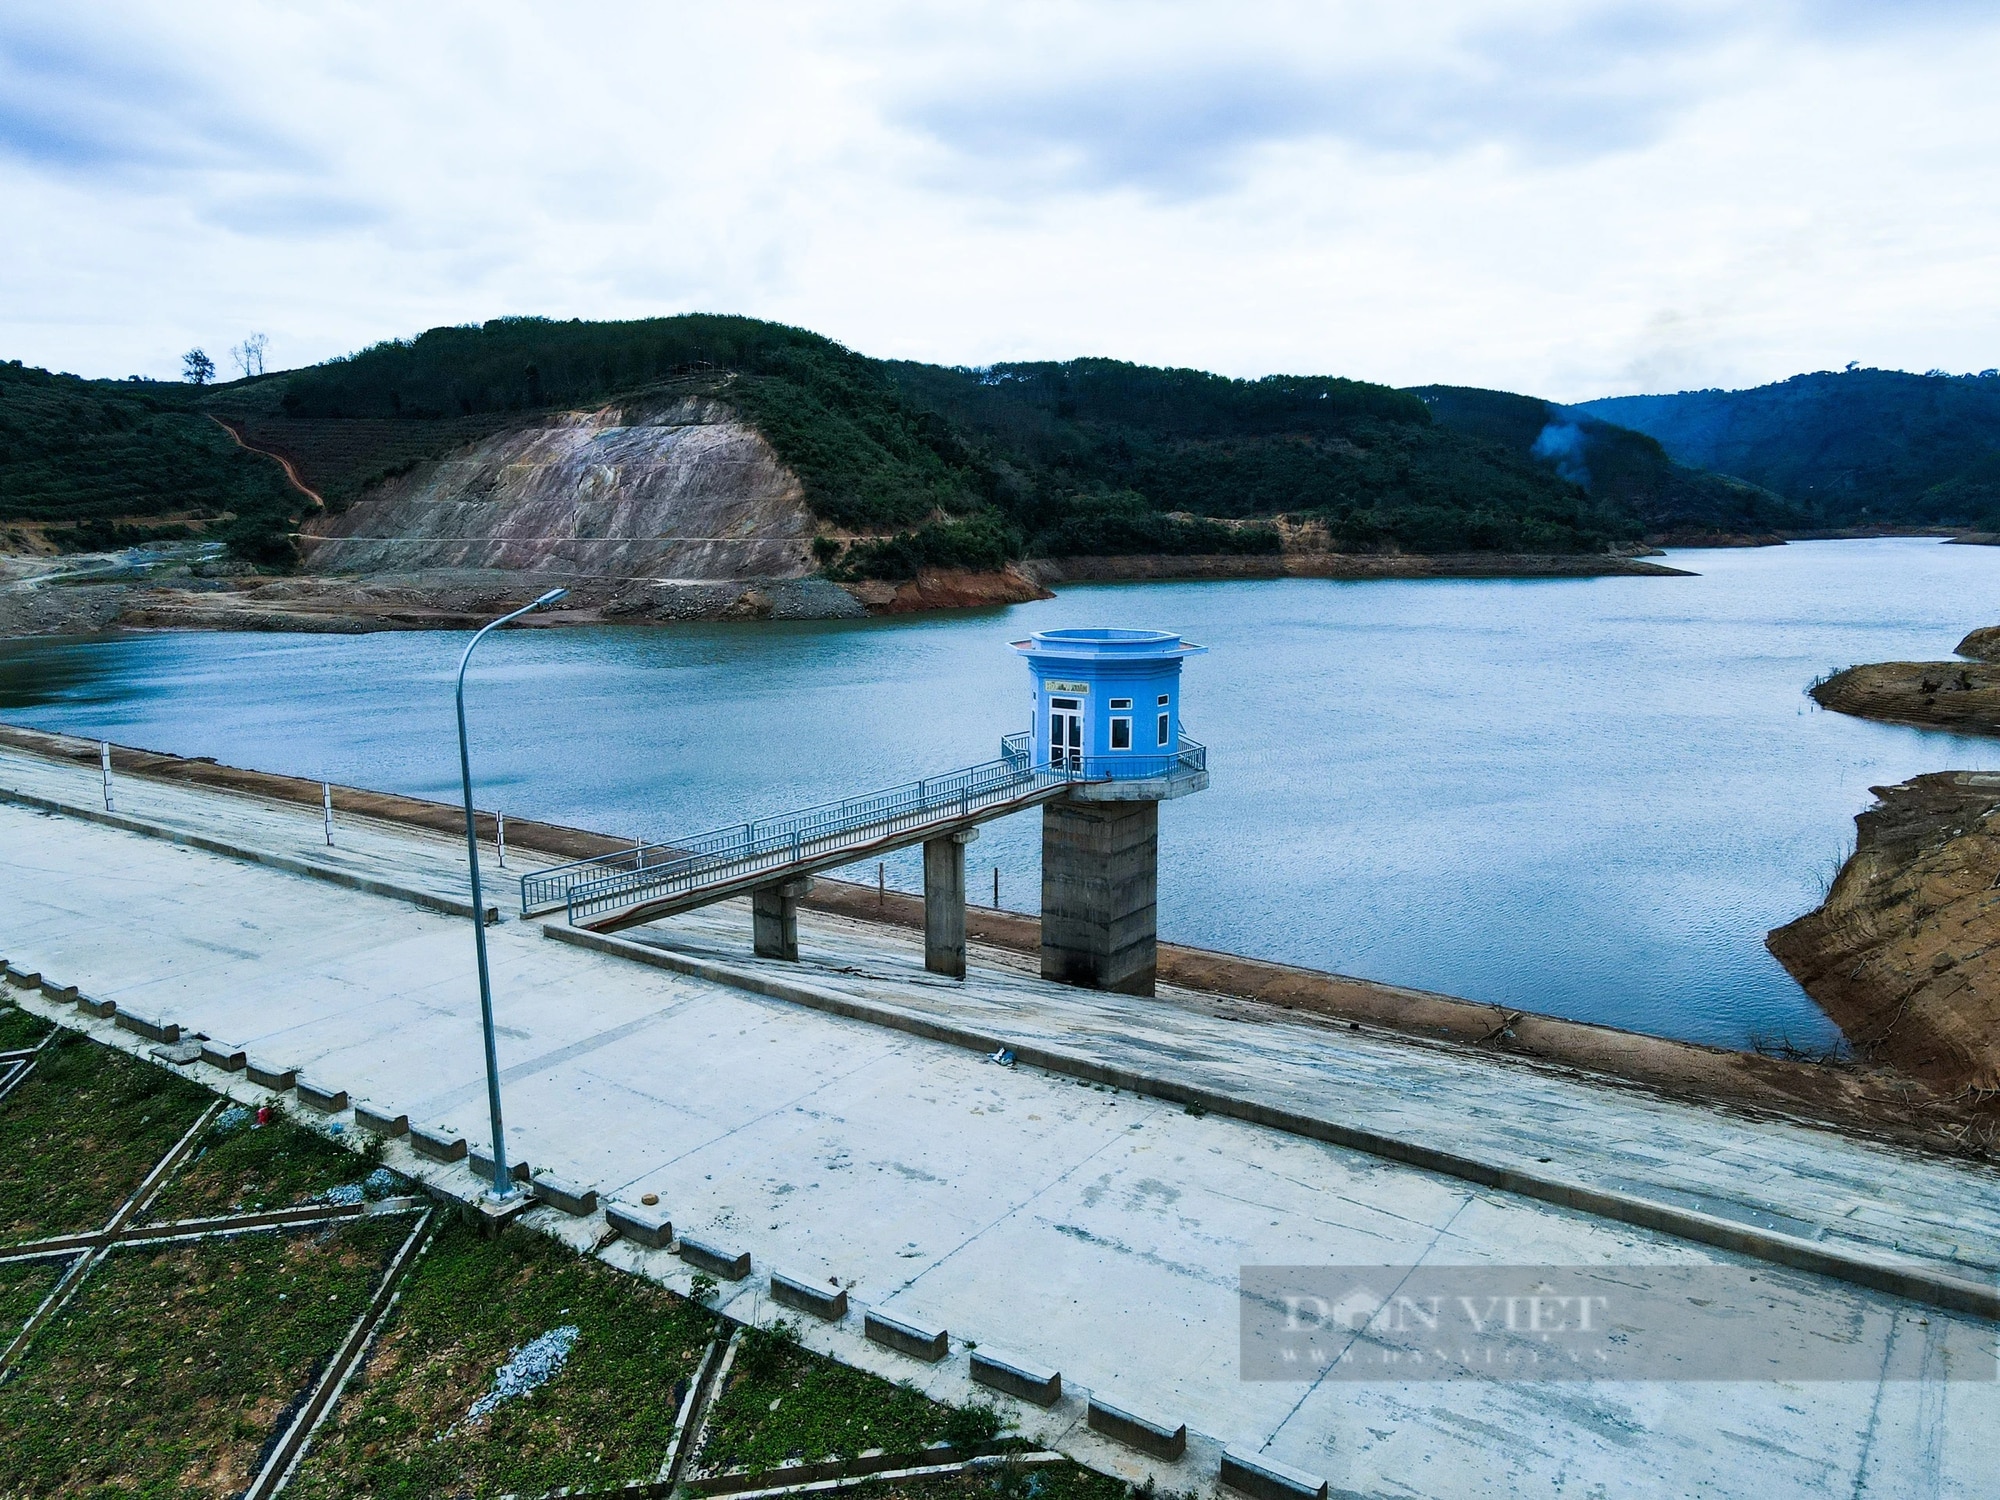 Giám đốc BQL các dự án ĐTXD tỉnh Đắk Nông: Hồ chứa nước Nam Xuân đã đảm bảo điều kiện an toàn- Ảnh 2.